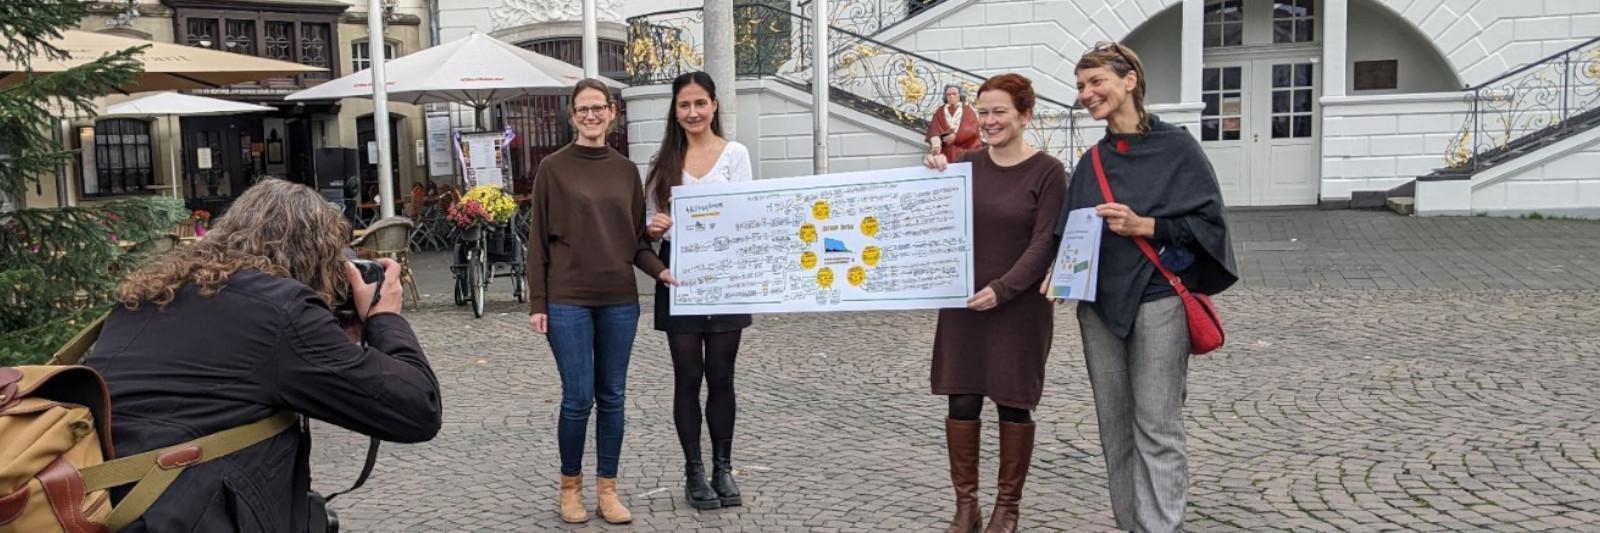 Vor der Bonner Rathaus übergeben Bürgerinnen das Transparent mit dem Klimaaktionsplan an Oberbürgermeisterin Katja Dörner und Gesa Maschkowski Mitinitiatorin von Bonn4Future hält den 150seitigen Plan in der Hand